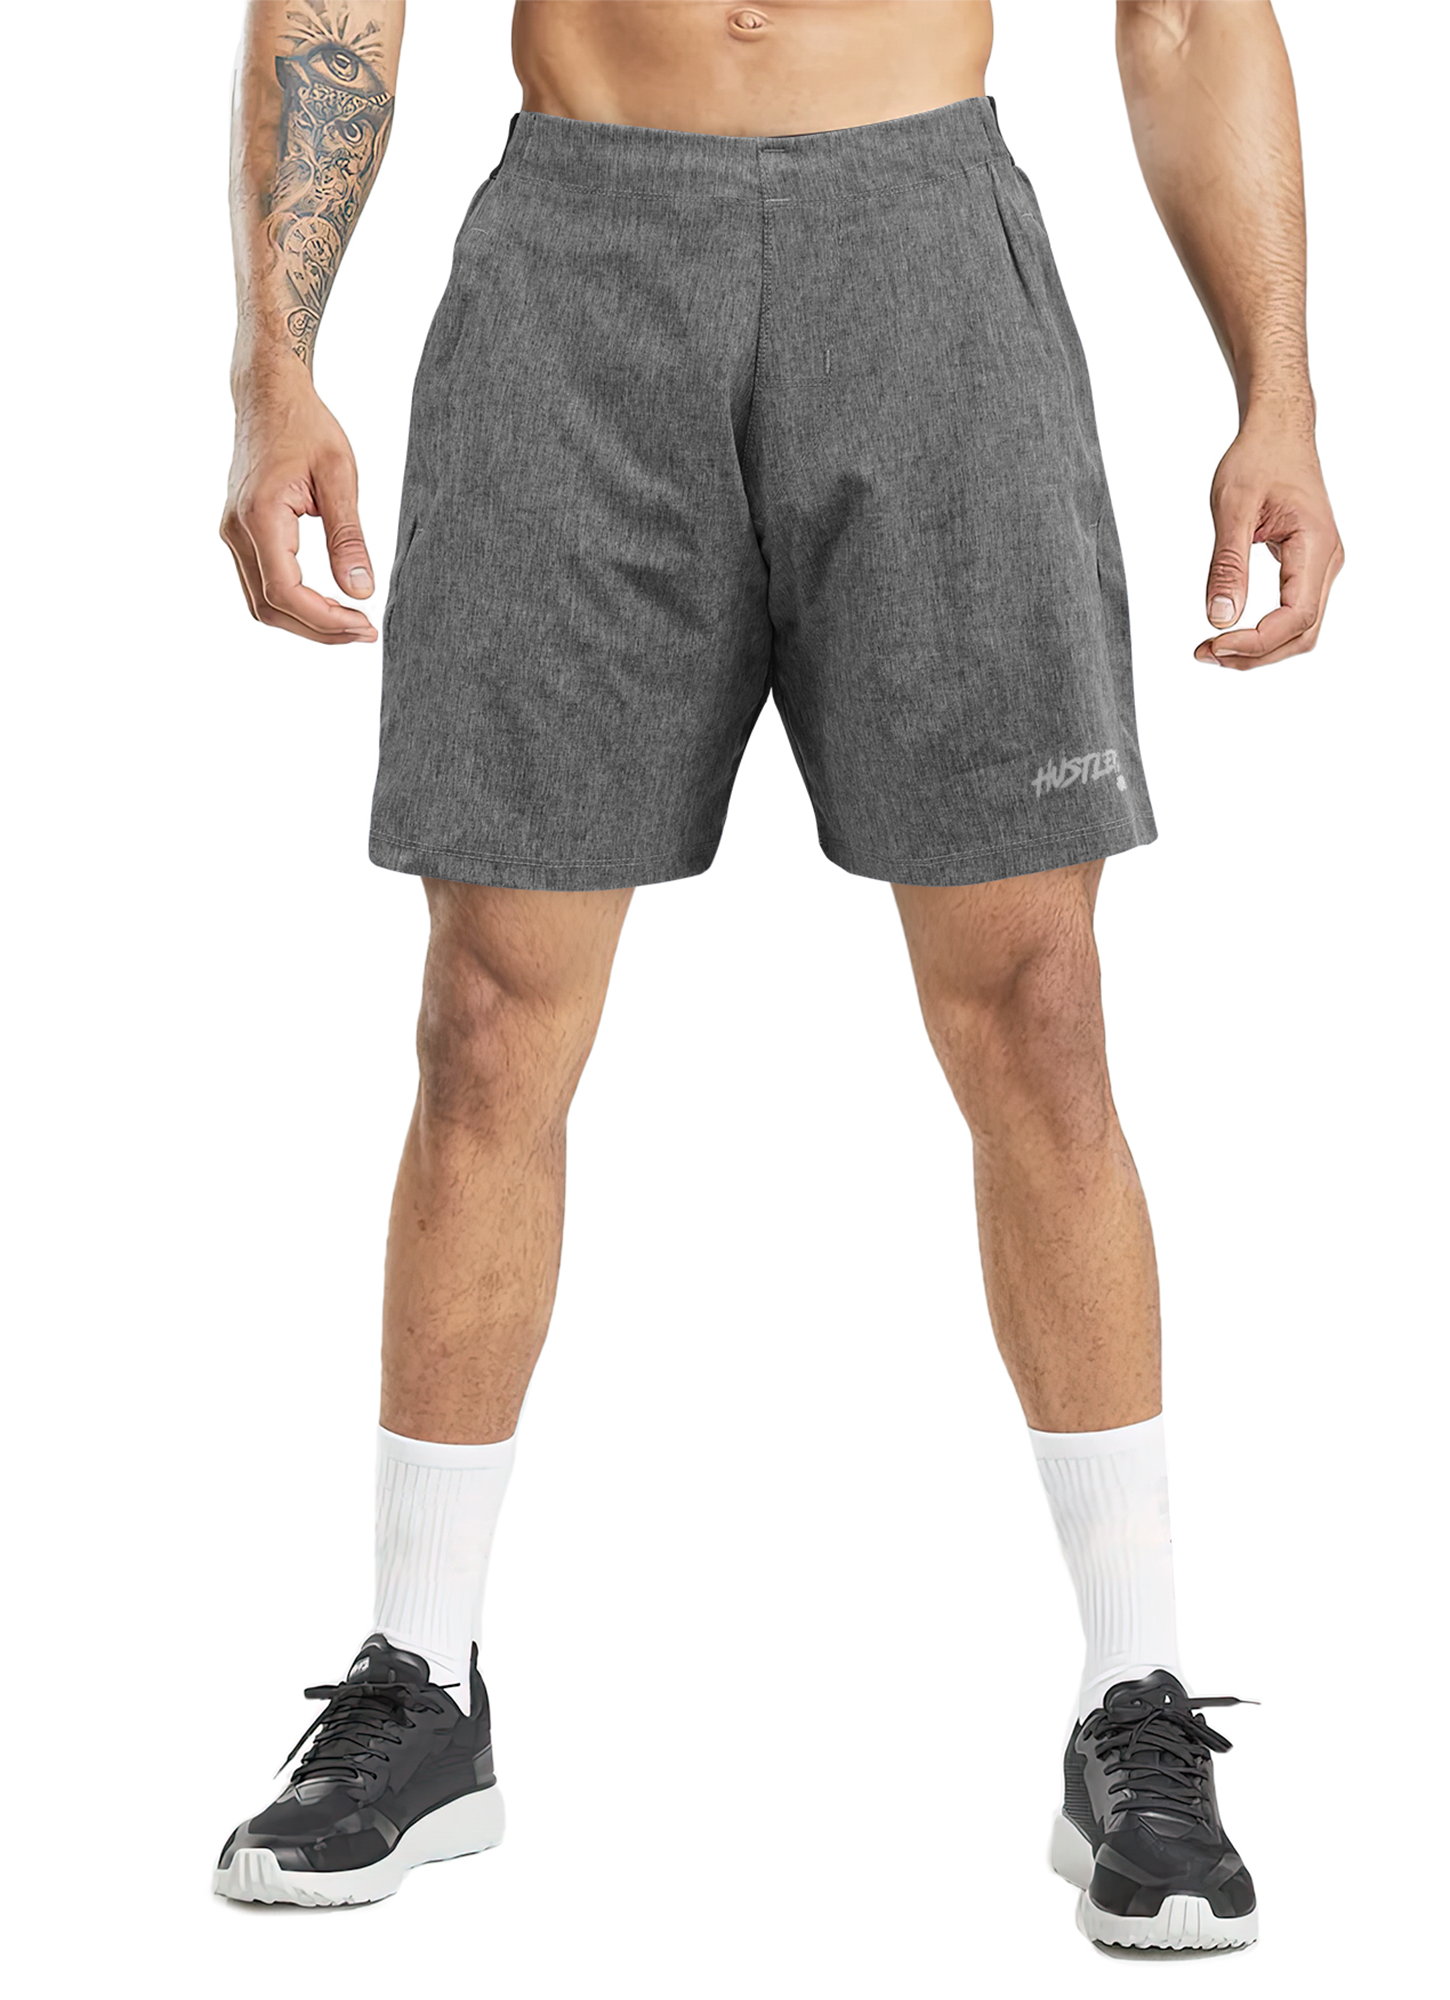 OG Marble Gray Shorts for Mens | HustlersOnlyPK